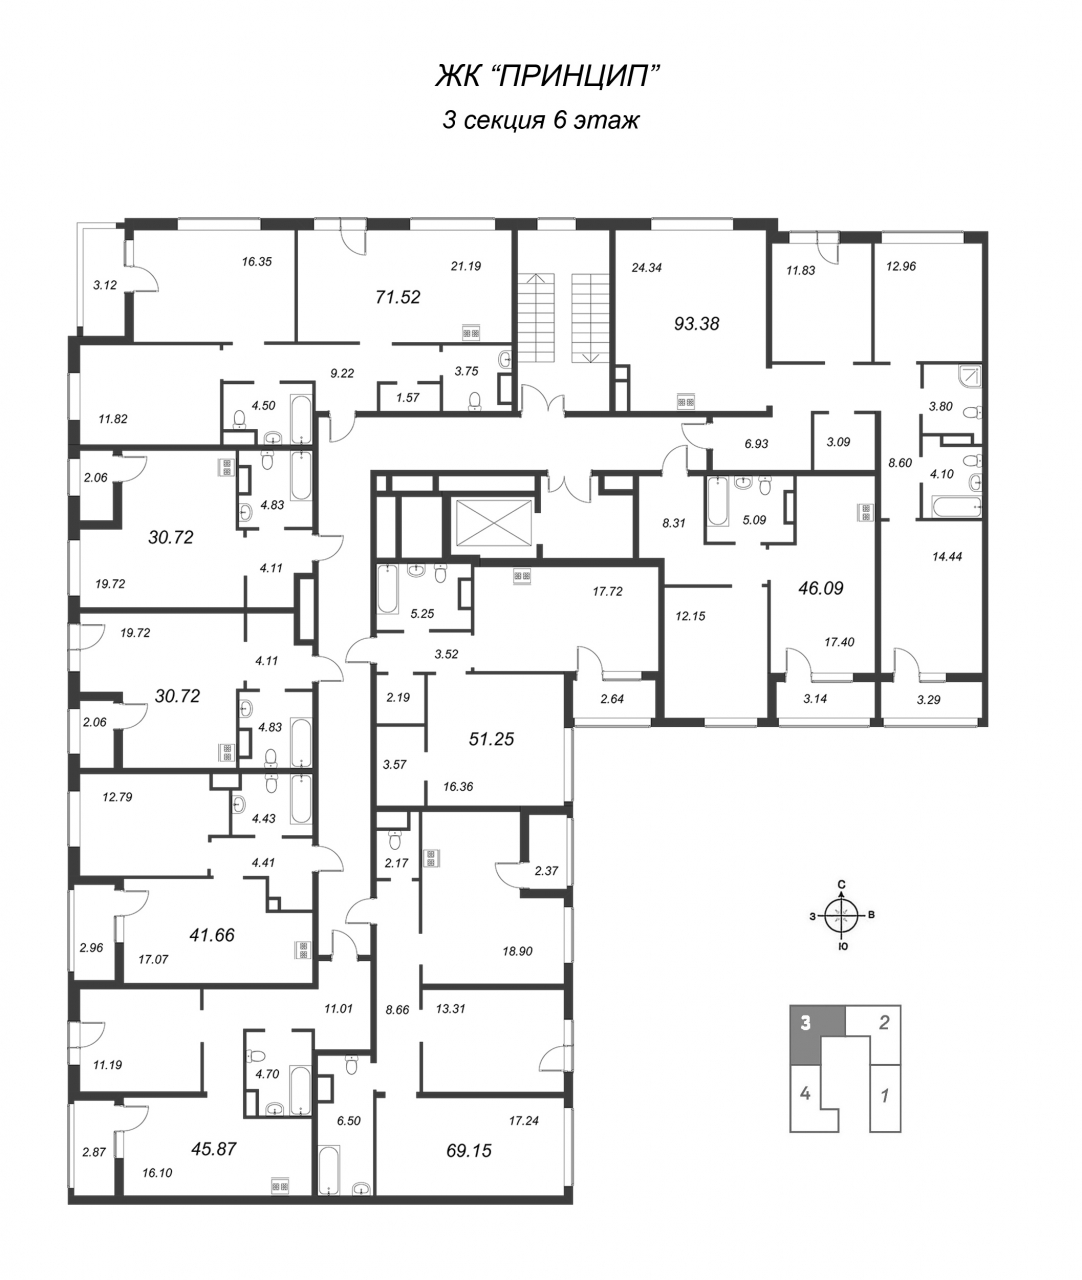 2-комнатная квартира (46м2) на продажу по адресу Двинская ул.— фото 2 из 4